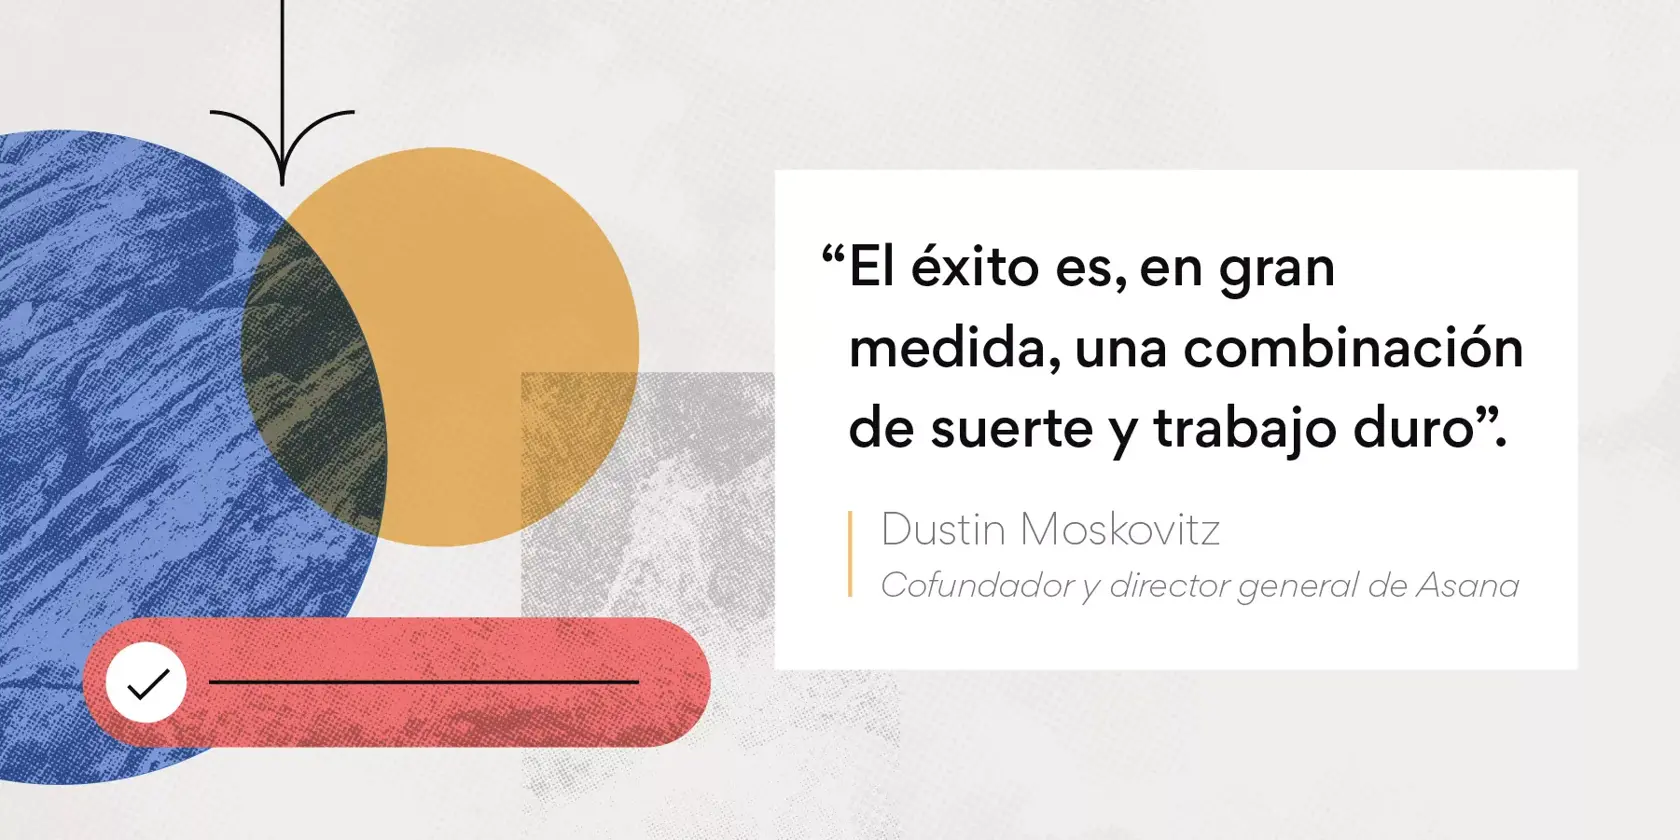 Imagen de cita motivadora de Dustin Moskovitz para los equipos